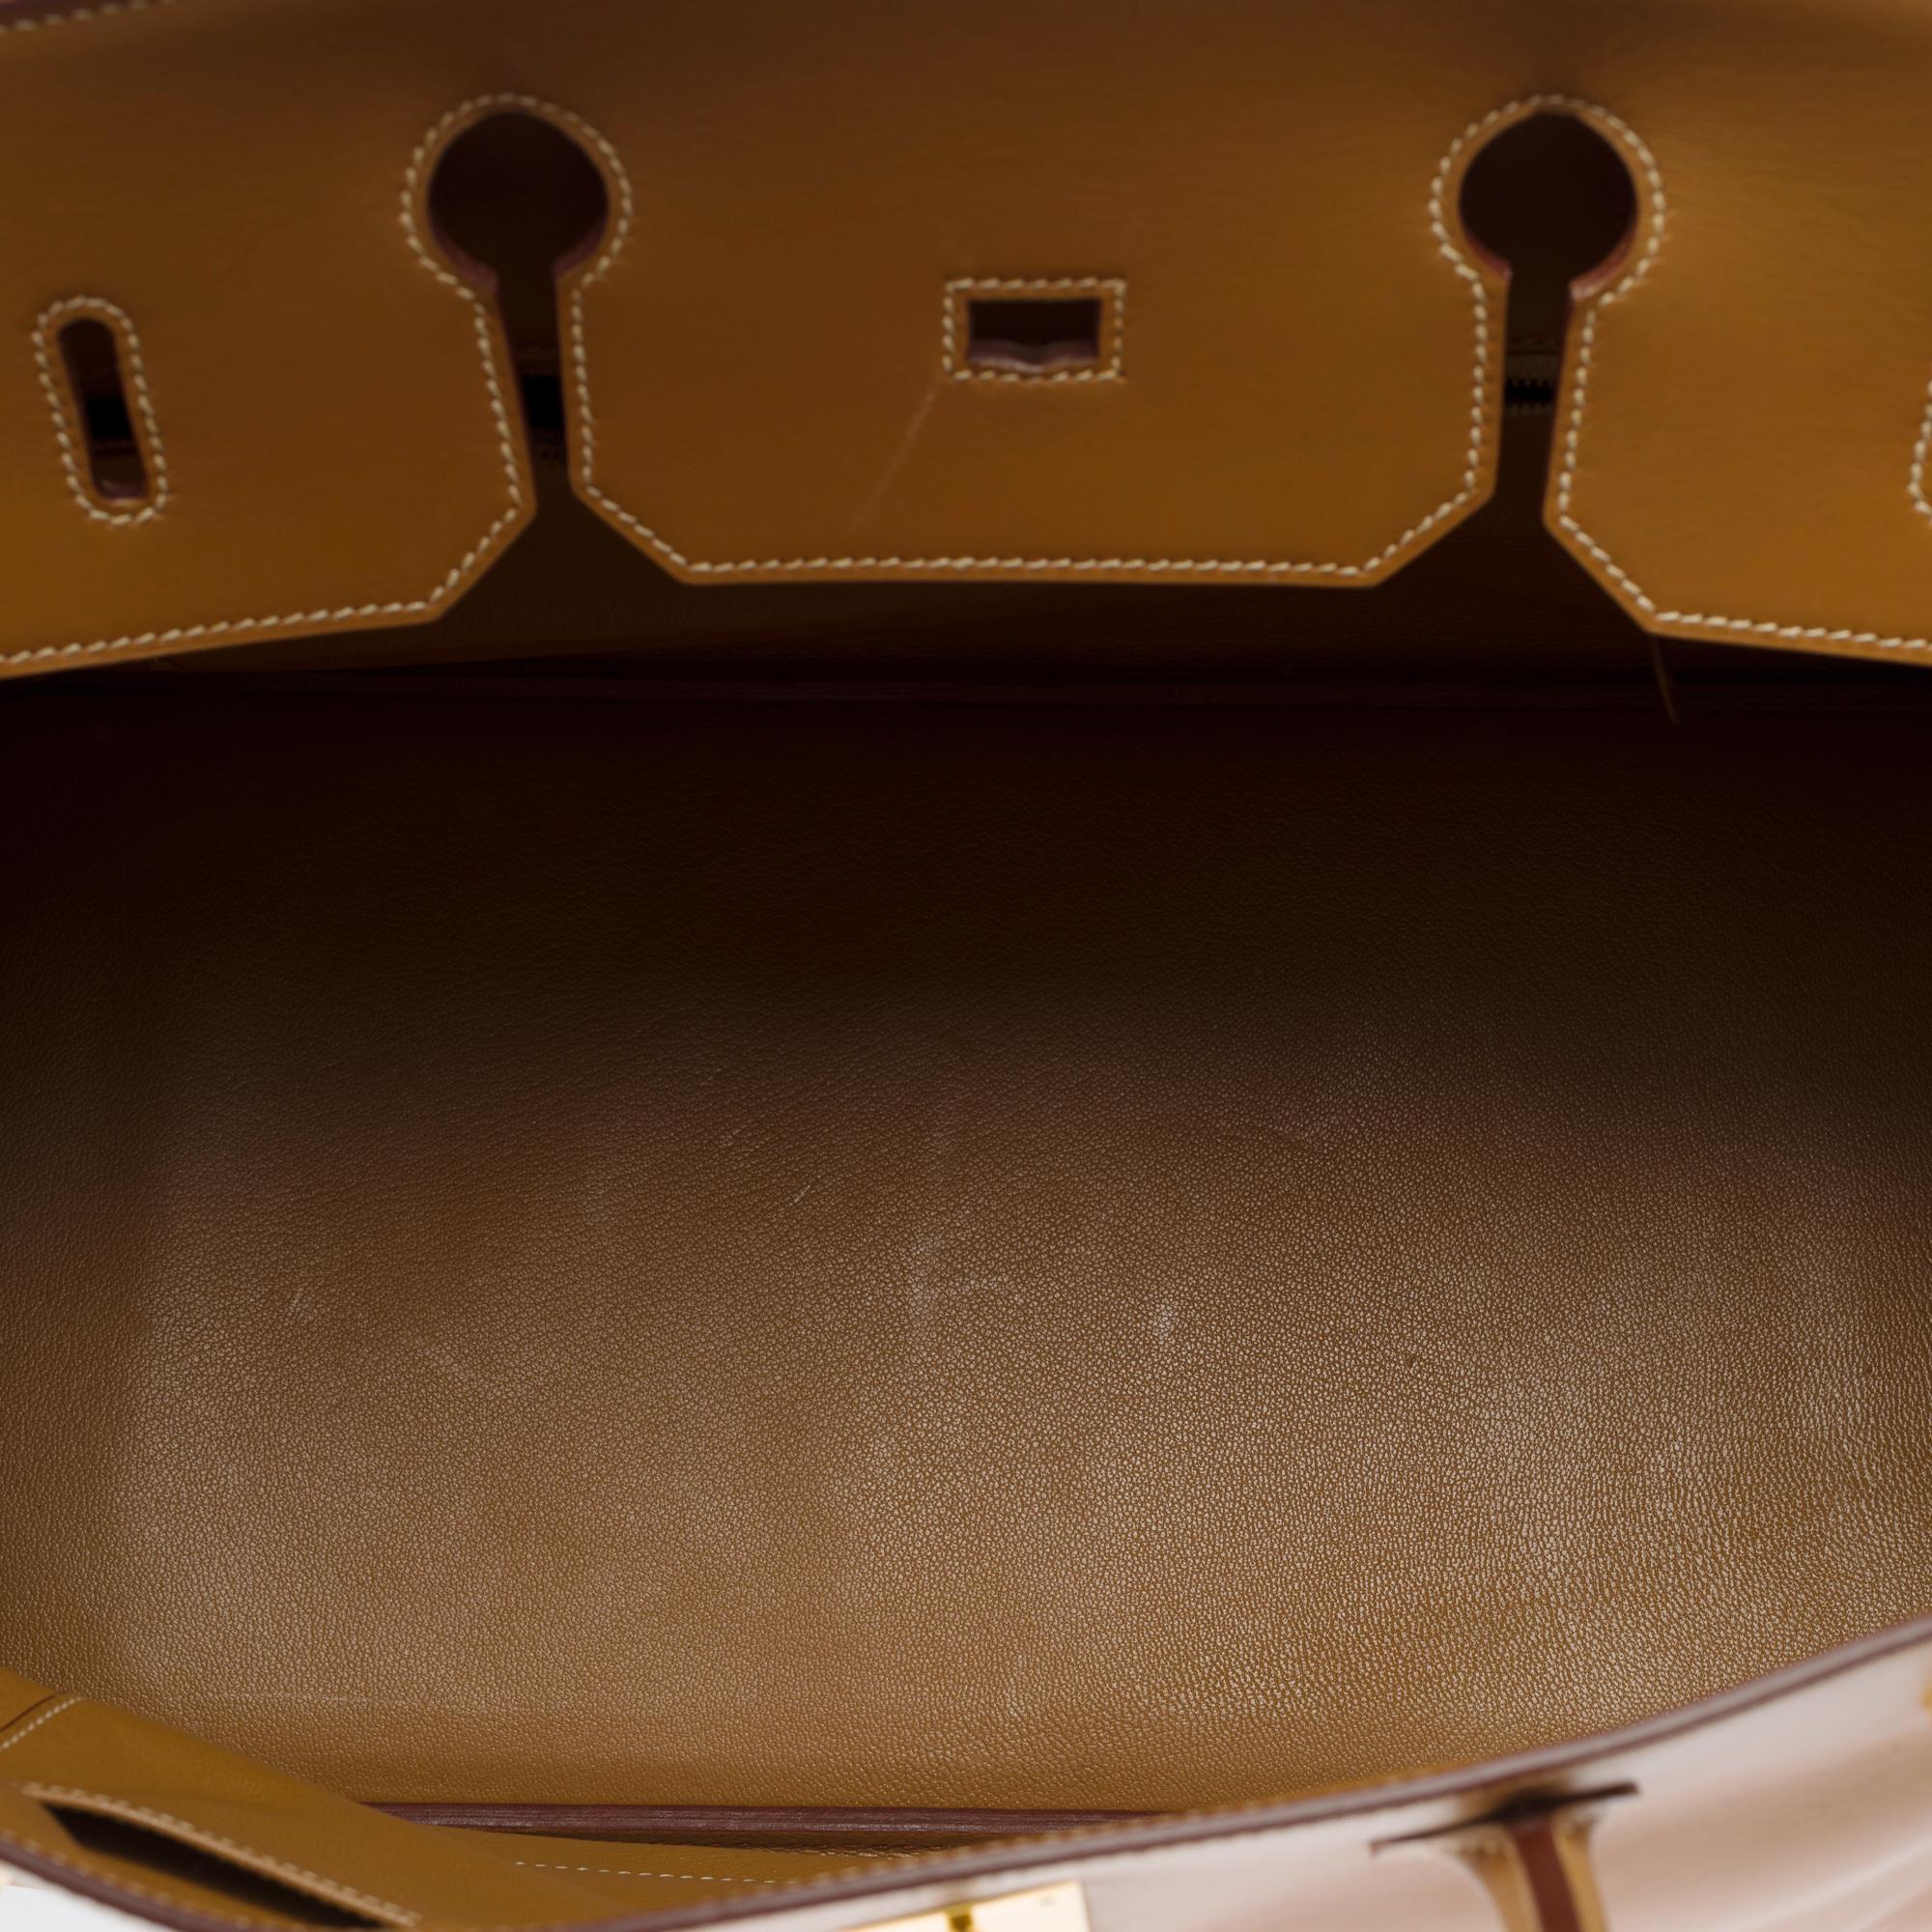 Fantastic Hermes Birkin 40 handbag in Camel (Gold) Chamonix leather, GHW For Sale 3